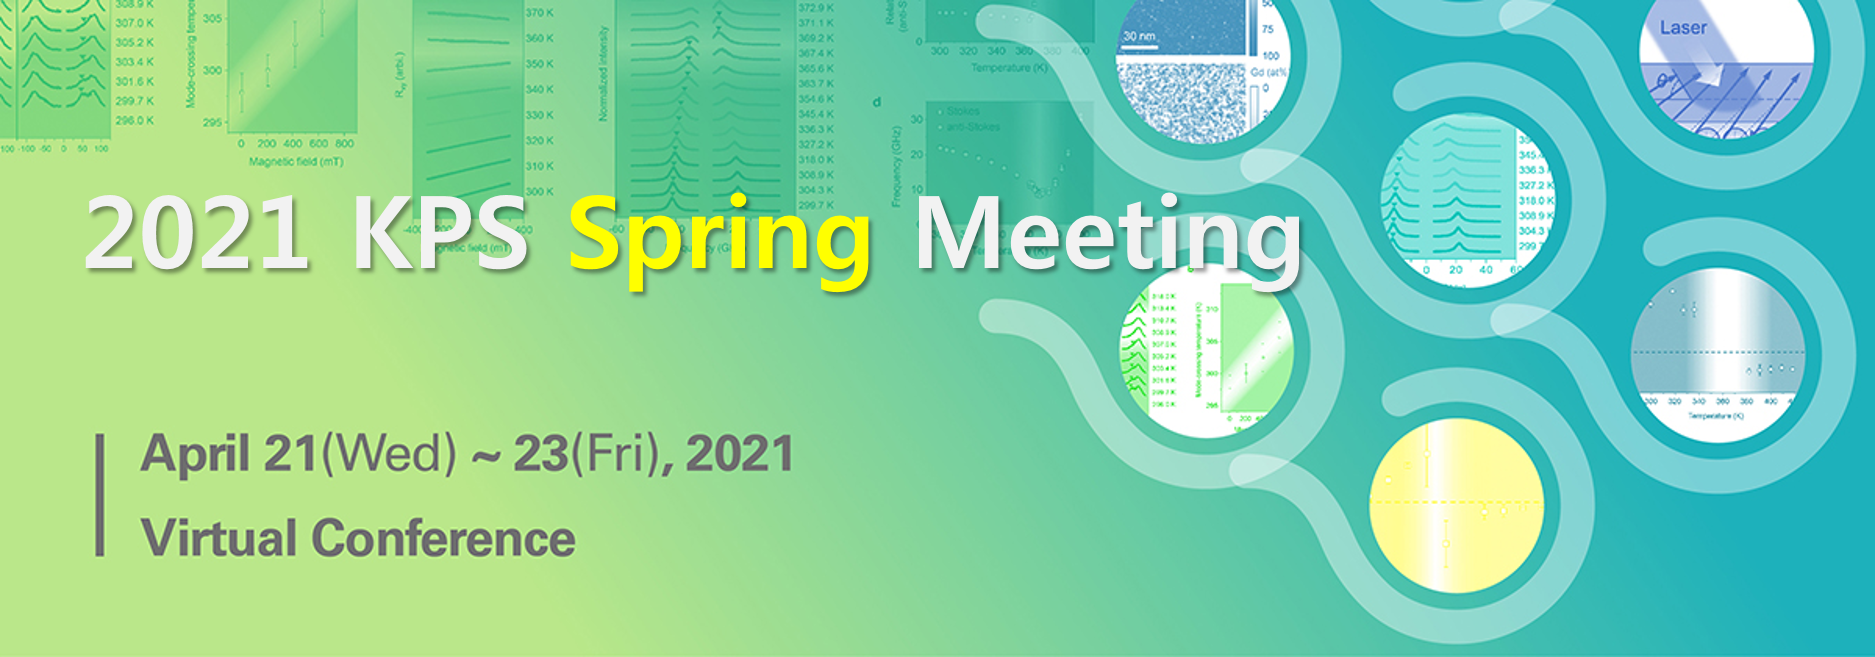 2021 KPS Spring Meeting